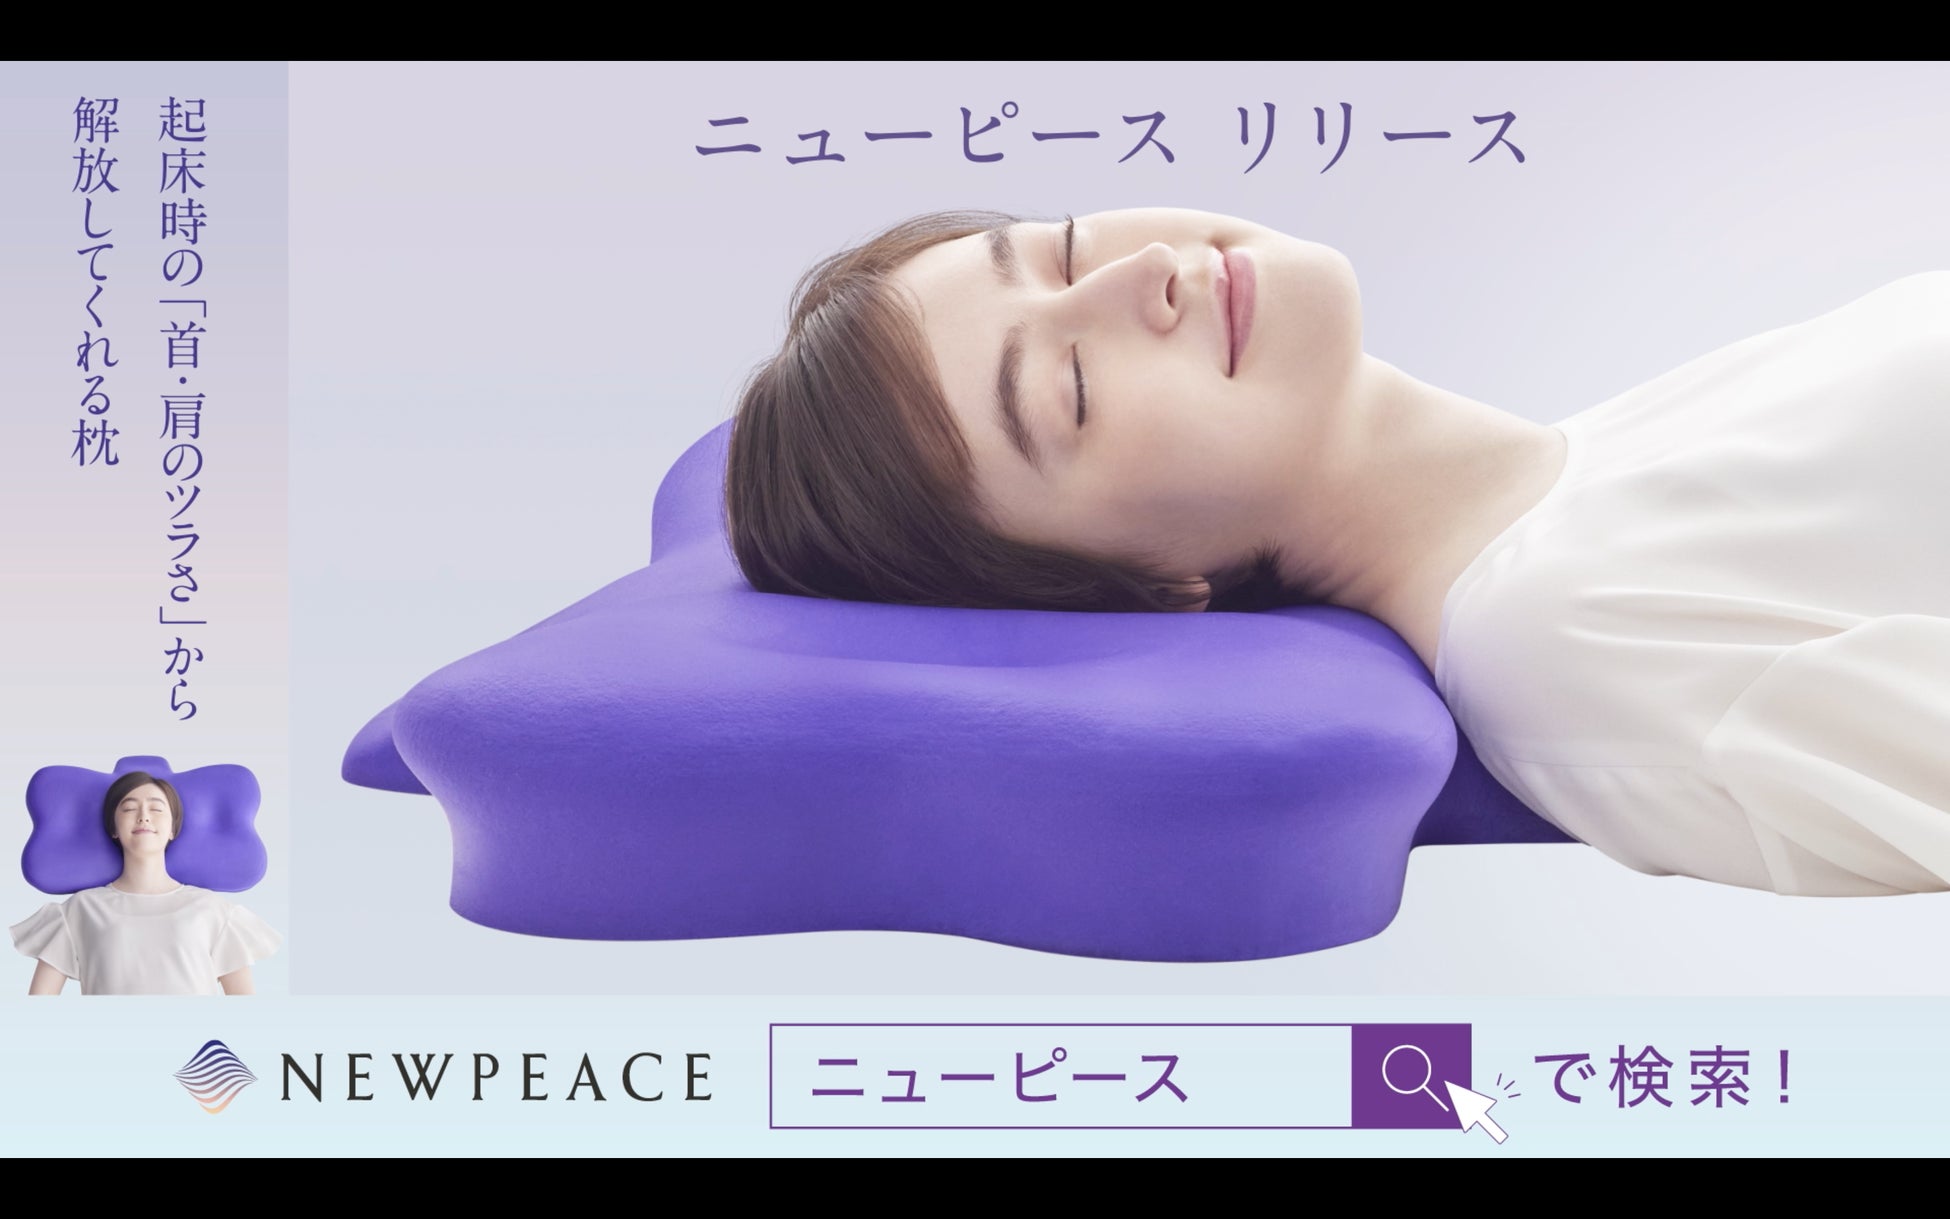 【MTG×アドボックス】トイレ広告アドボックスに寝具ブランド「NEWPEACE」の広告掲載が開始されました